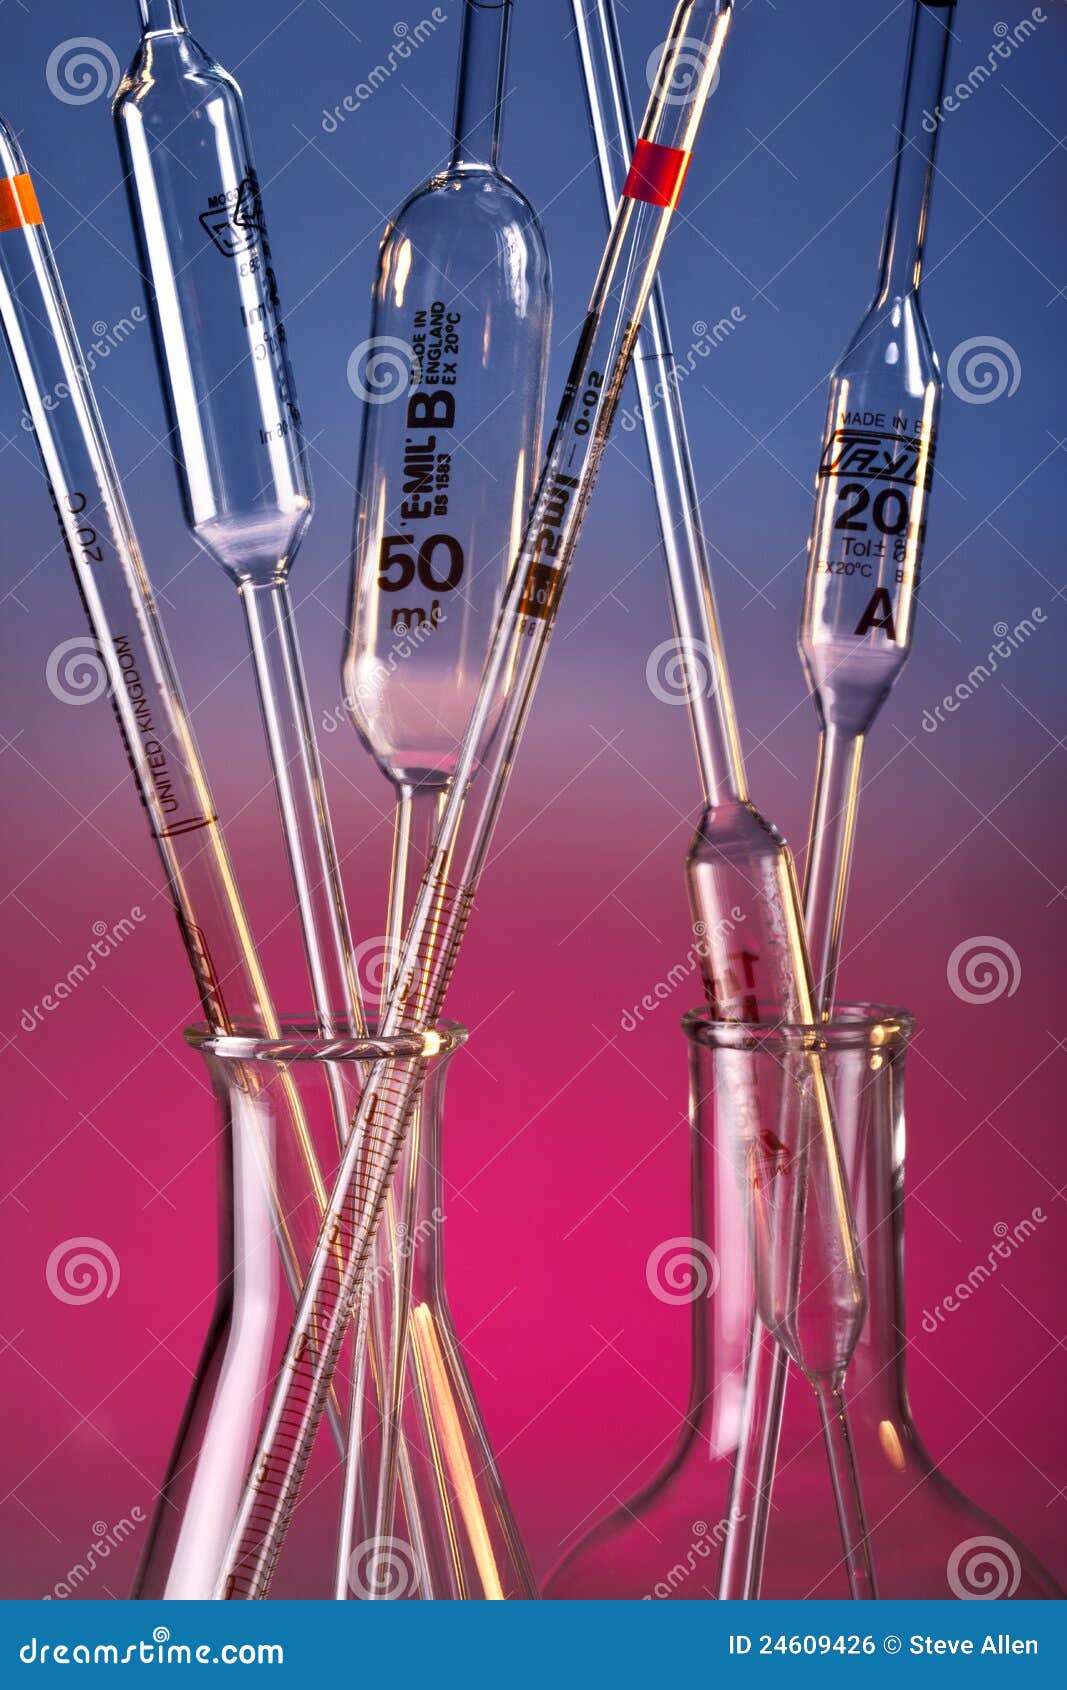 laboratory glassware - pipettes